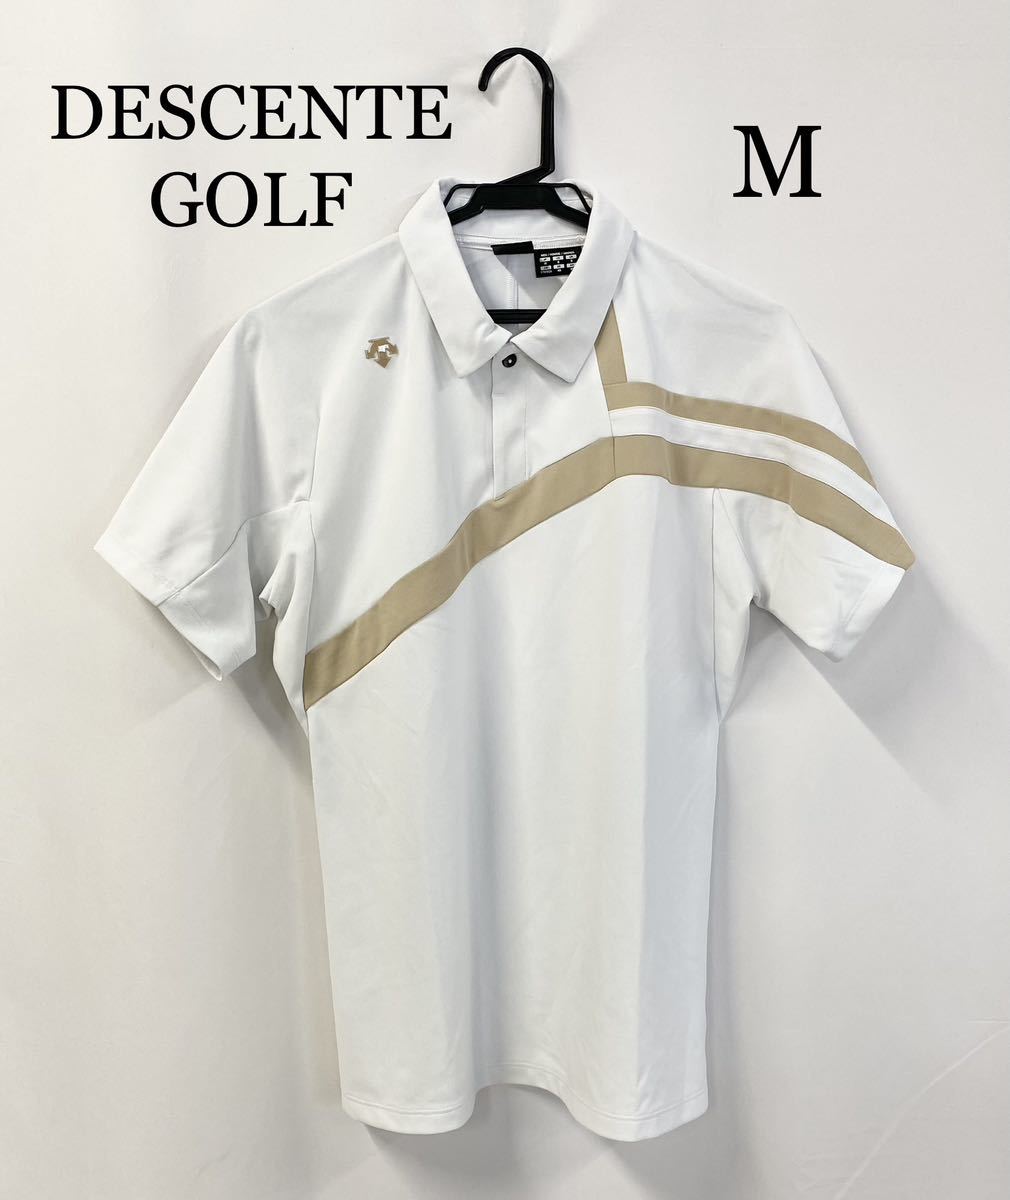 公式の店舗 DESCENTE 0288 GOLF シリコンロゴ Mサイズ 半袖ポロシャツ